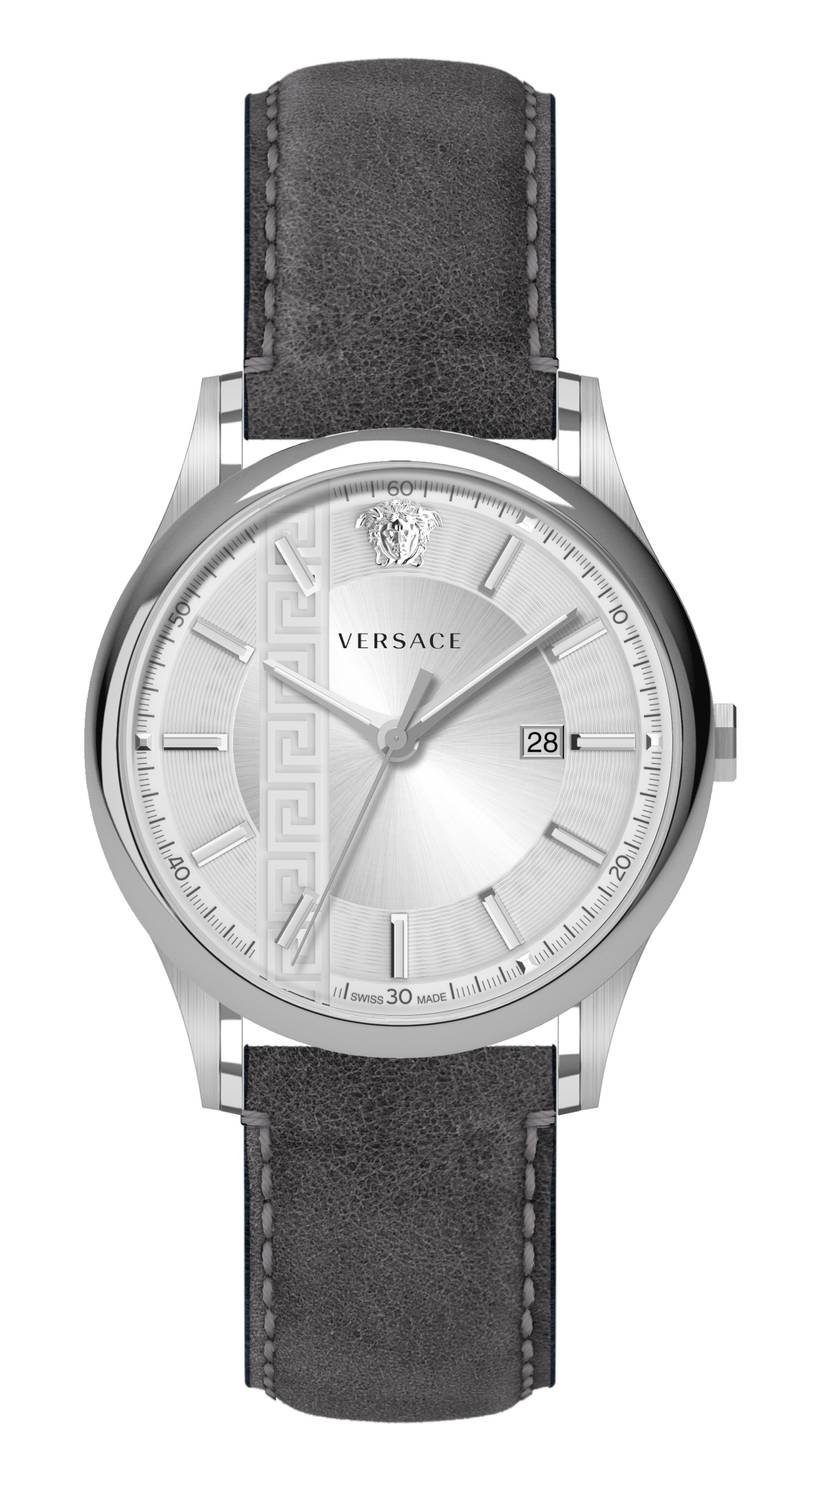 Schweizer Uhr Aiakos Versace